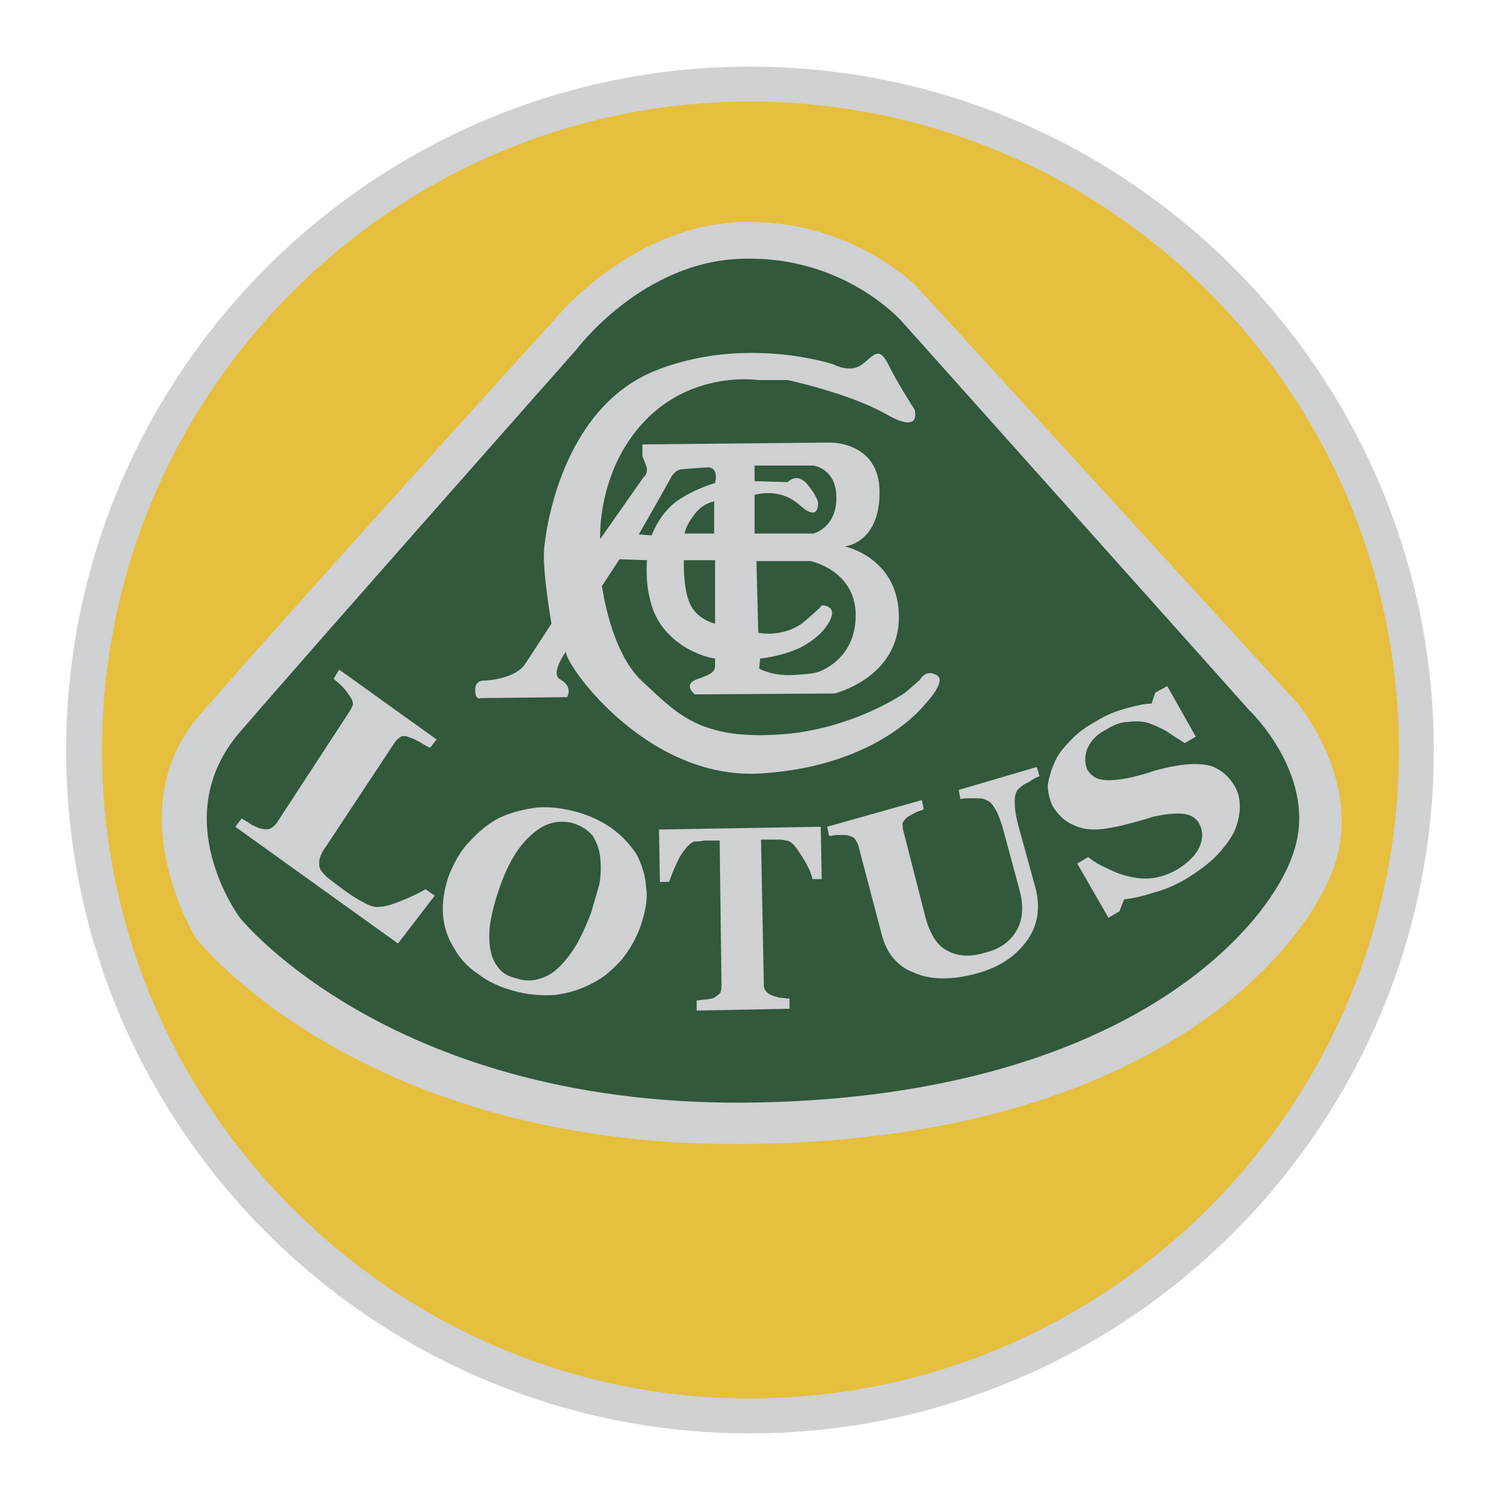 Lotus Speedchampions